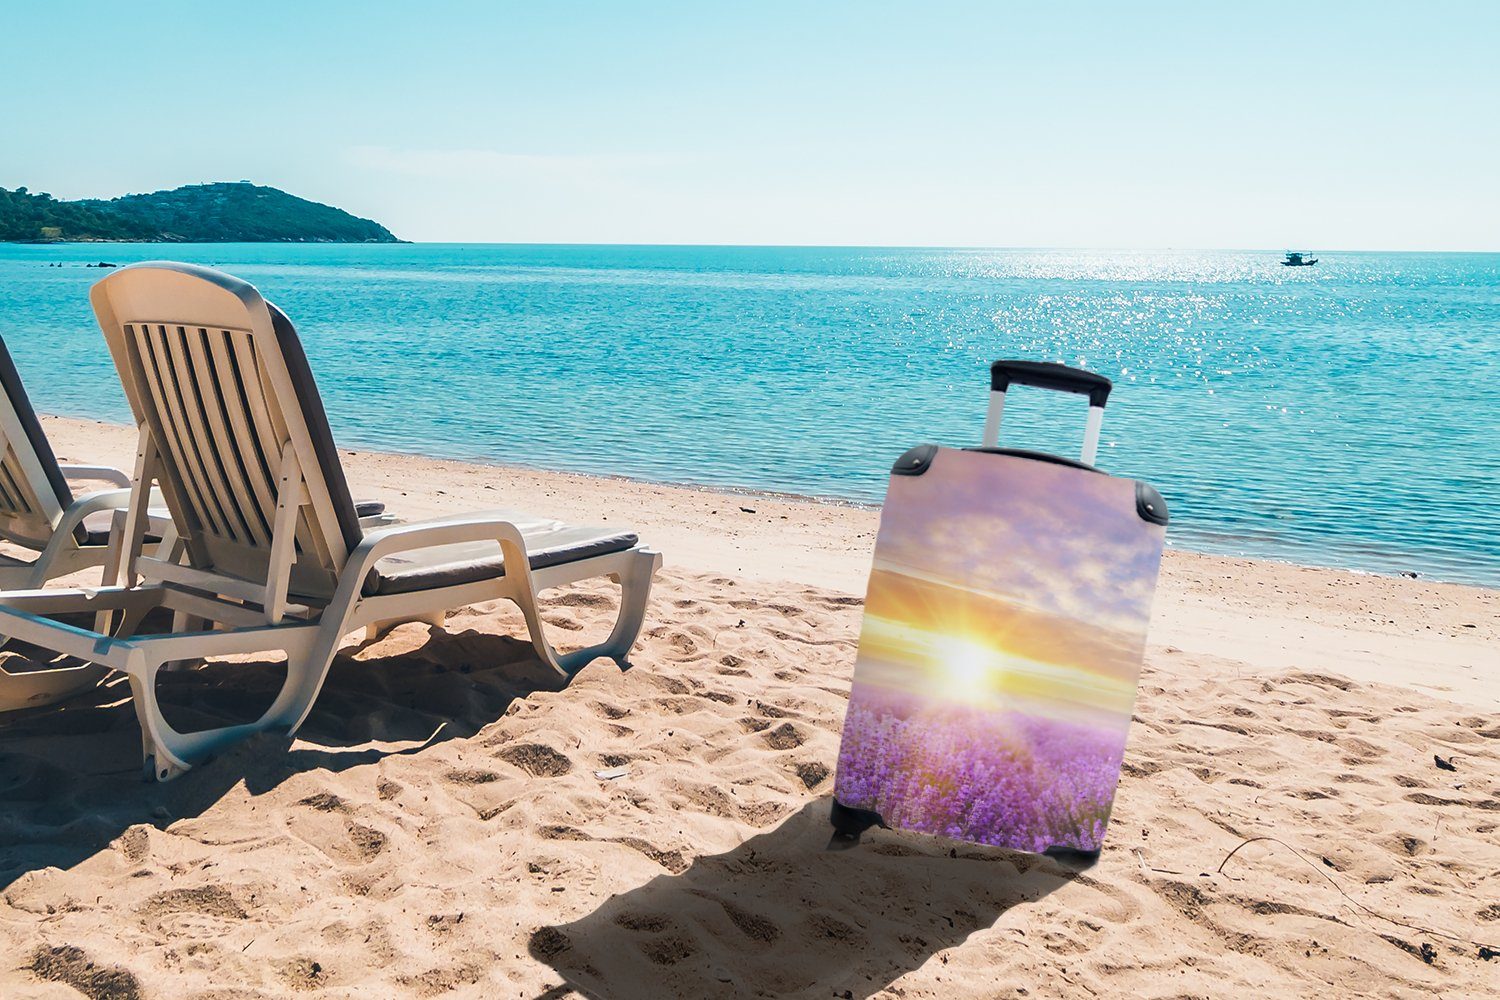 Handgepäck Reisekoffer Ferien, für MuchoWow 4 - Himmel Lavendel Reisetasche Natur, - Handgepäckkoffer Rollen, Trolley, - rollen, mit Sonne